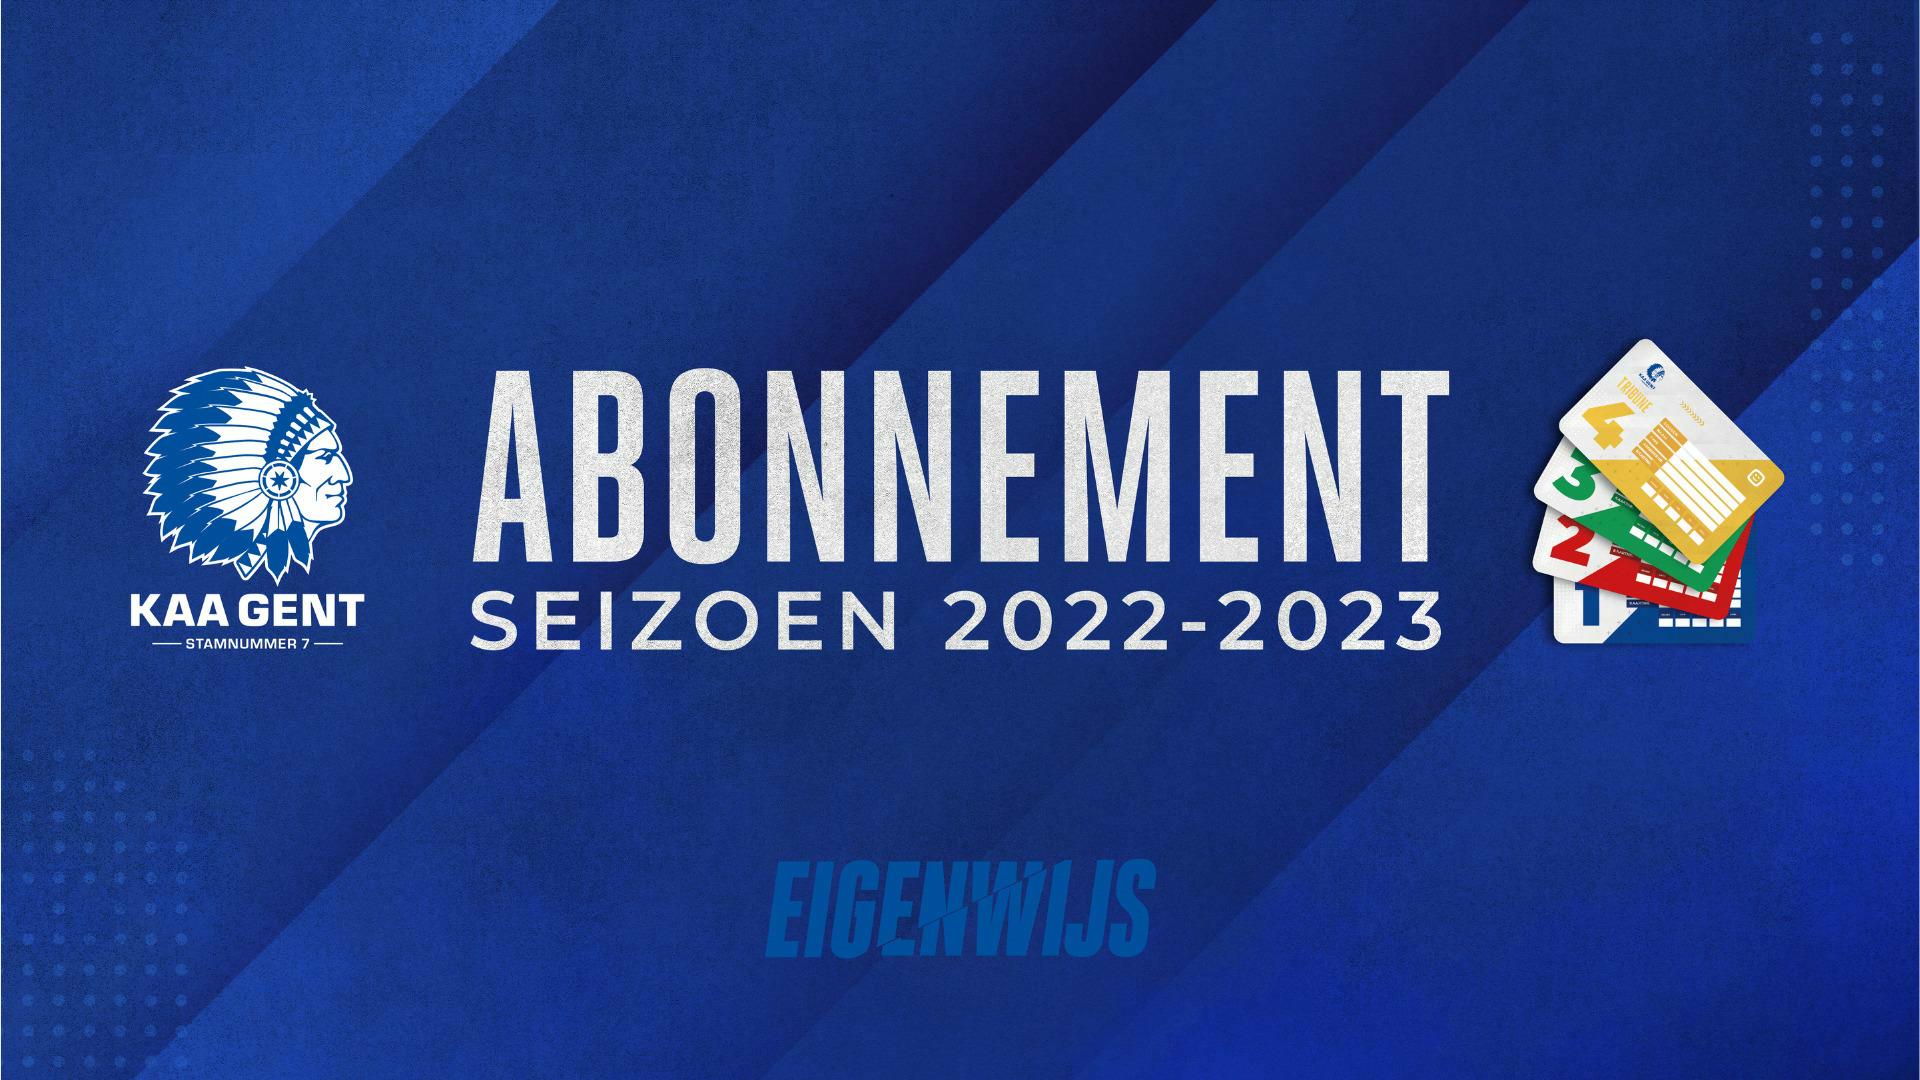 IK BEN NEN BUFFALO: ABONNEMENTEN 2022 - 2023